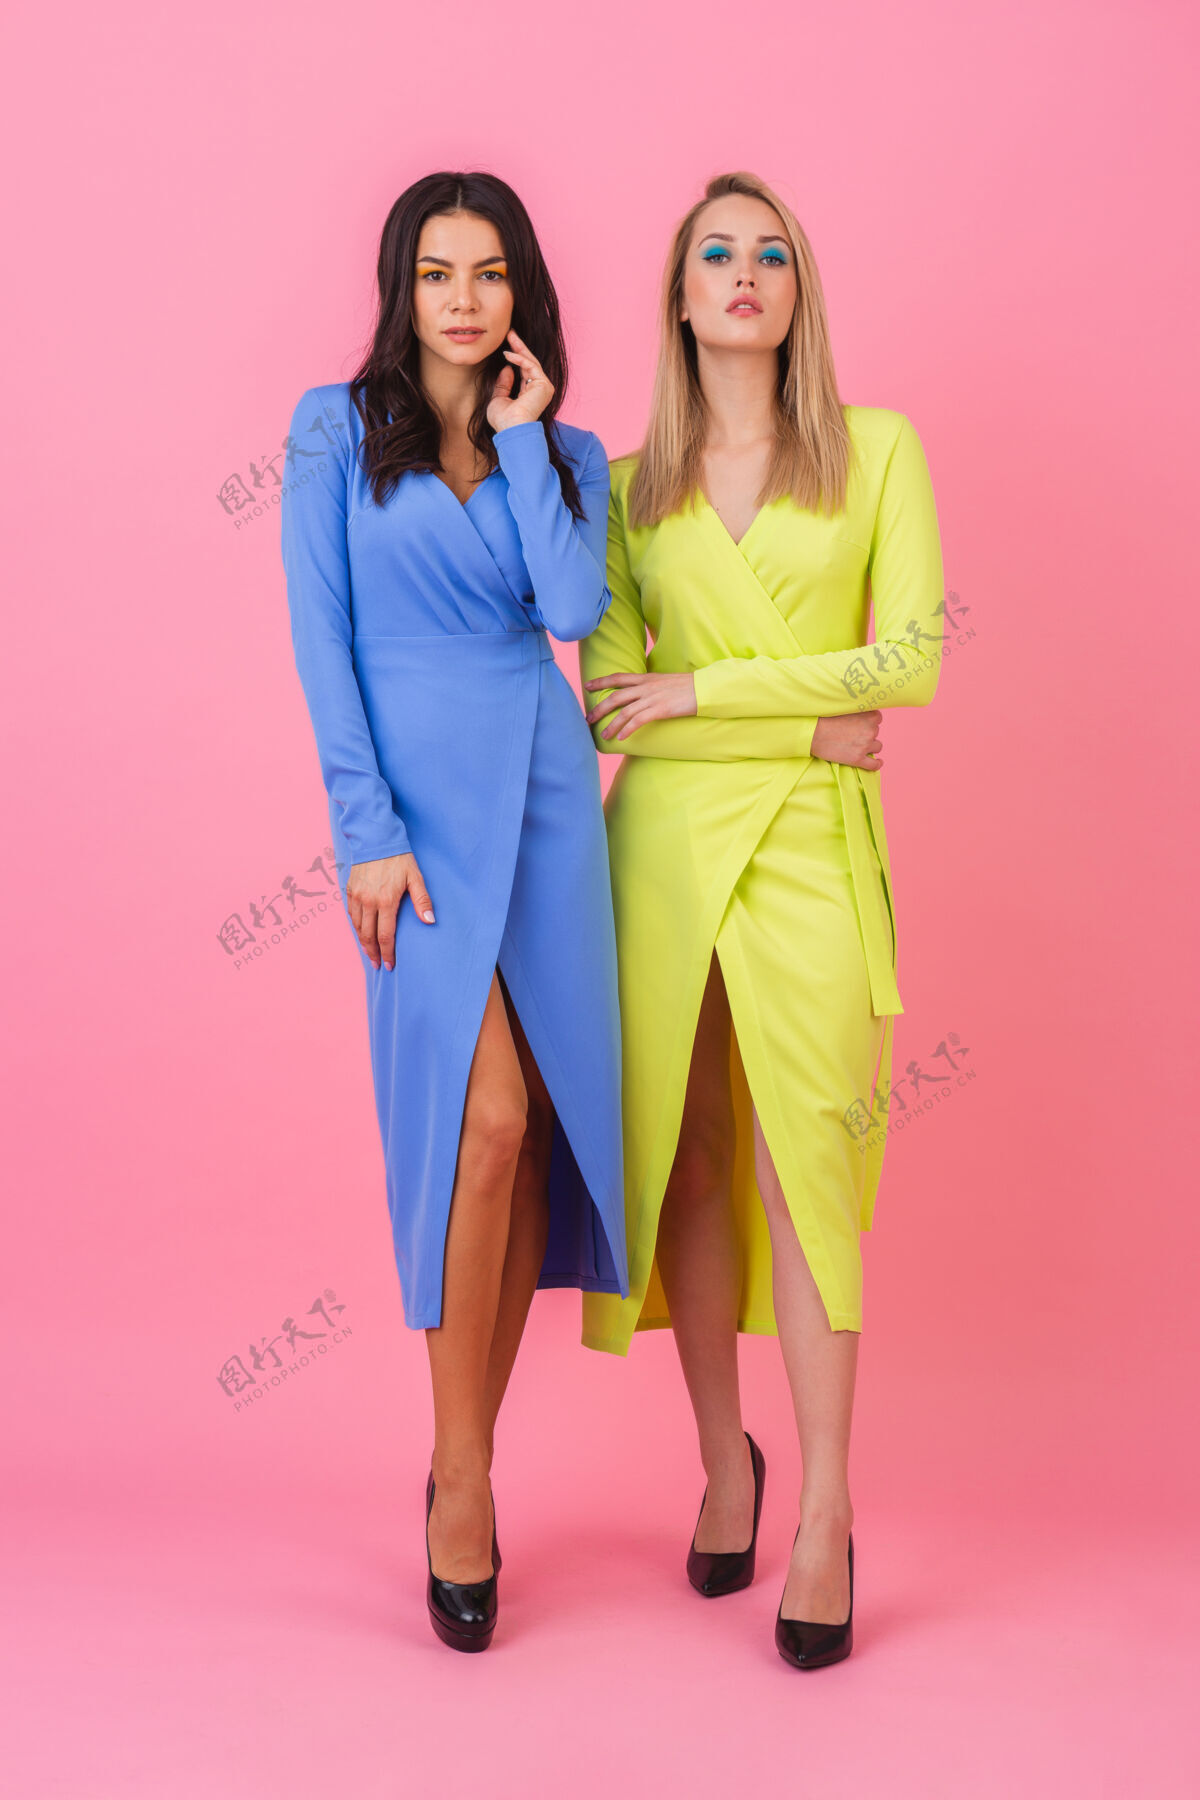 夹克两位时尚性感迷人的女士身着蓝黄相间的时尚多彩连衣裙 在粉色墙壁上摆出了一副丰满的姿势 夏日时尚潮流年轻休闲外观